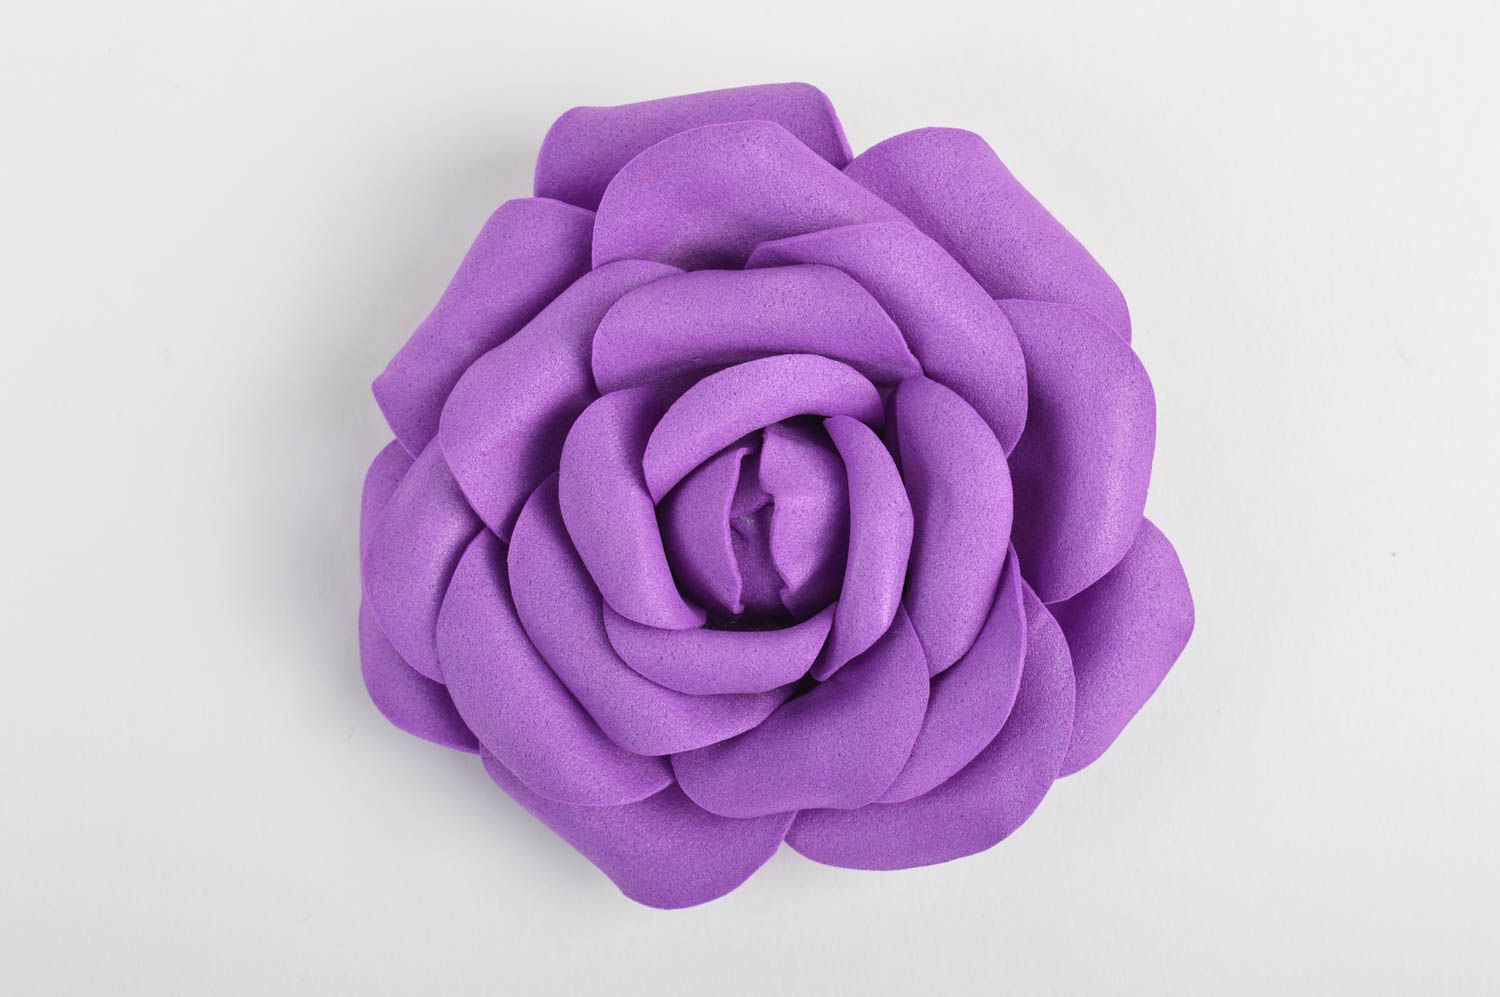 Заготовка для броши в виде цветка своими руками из фоамирана фиолетовая хендмейд фото 2